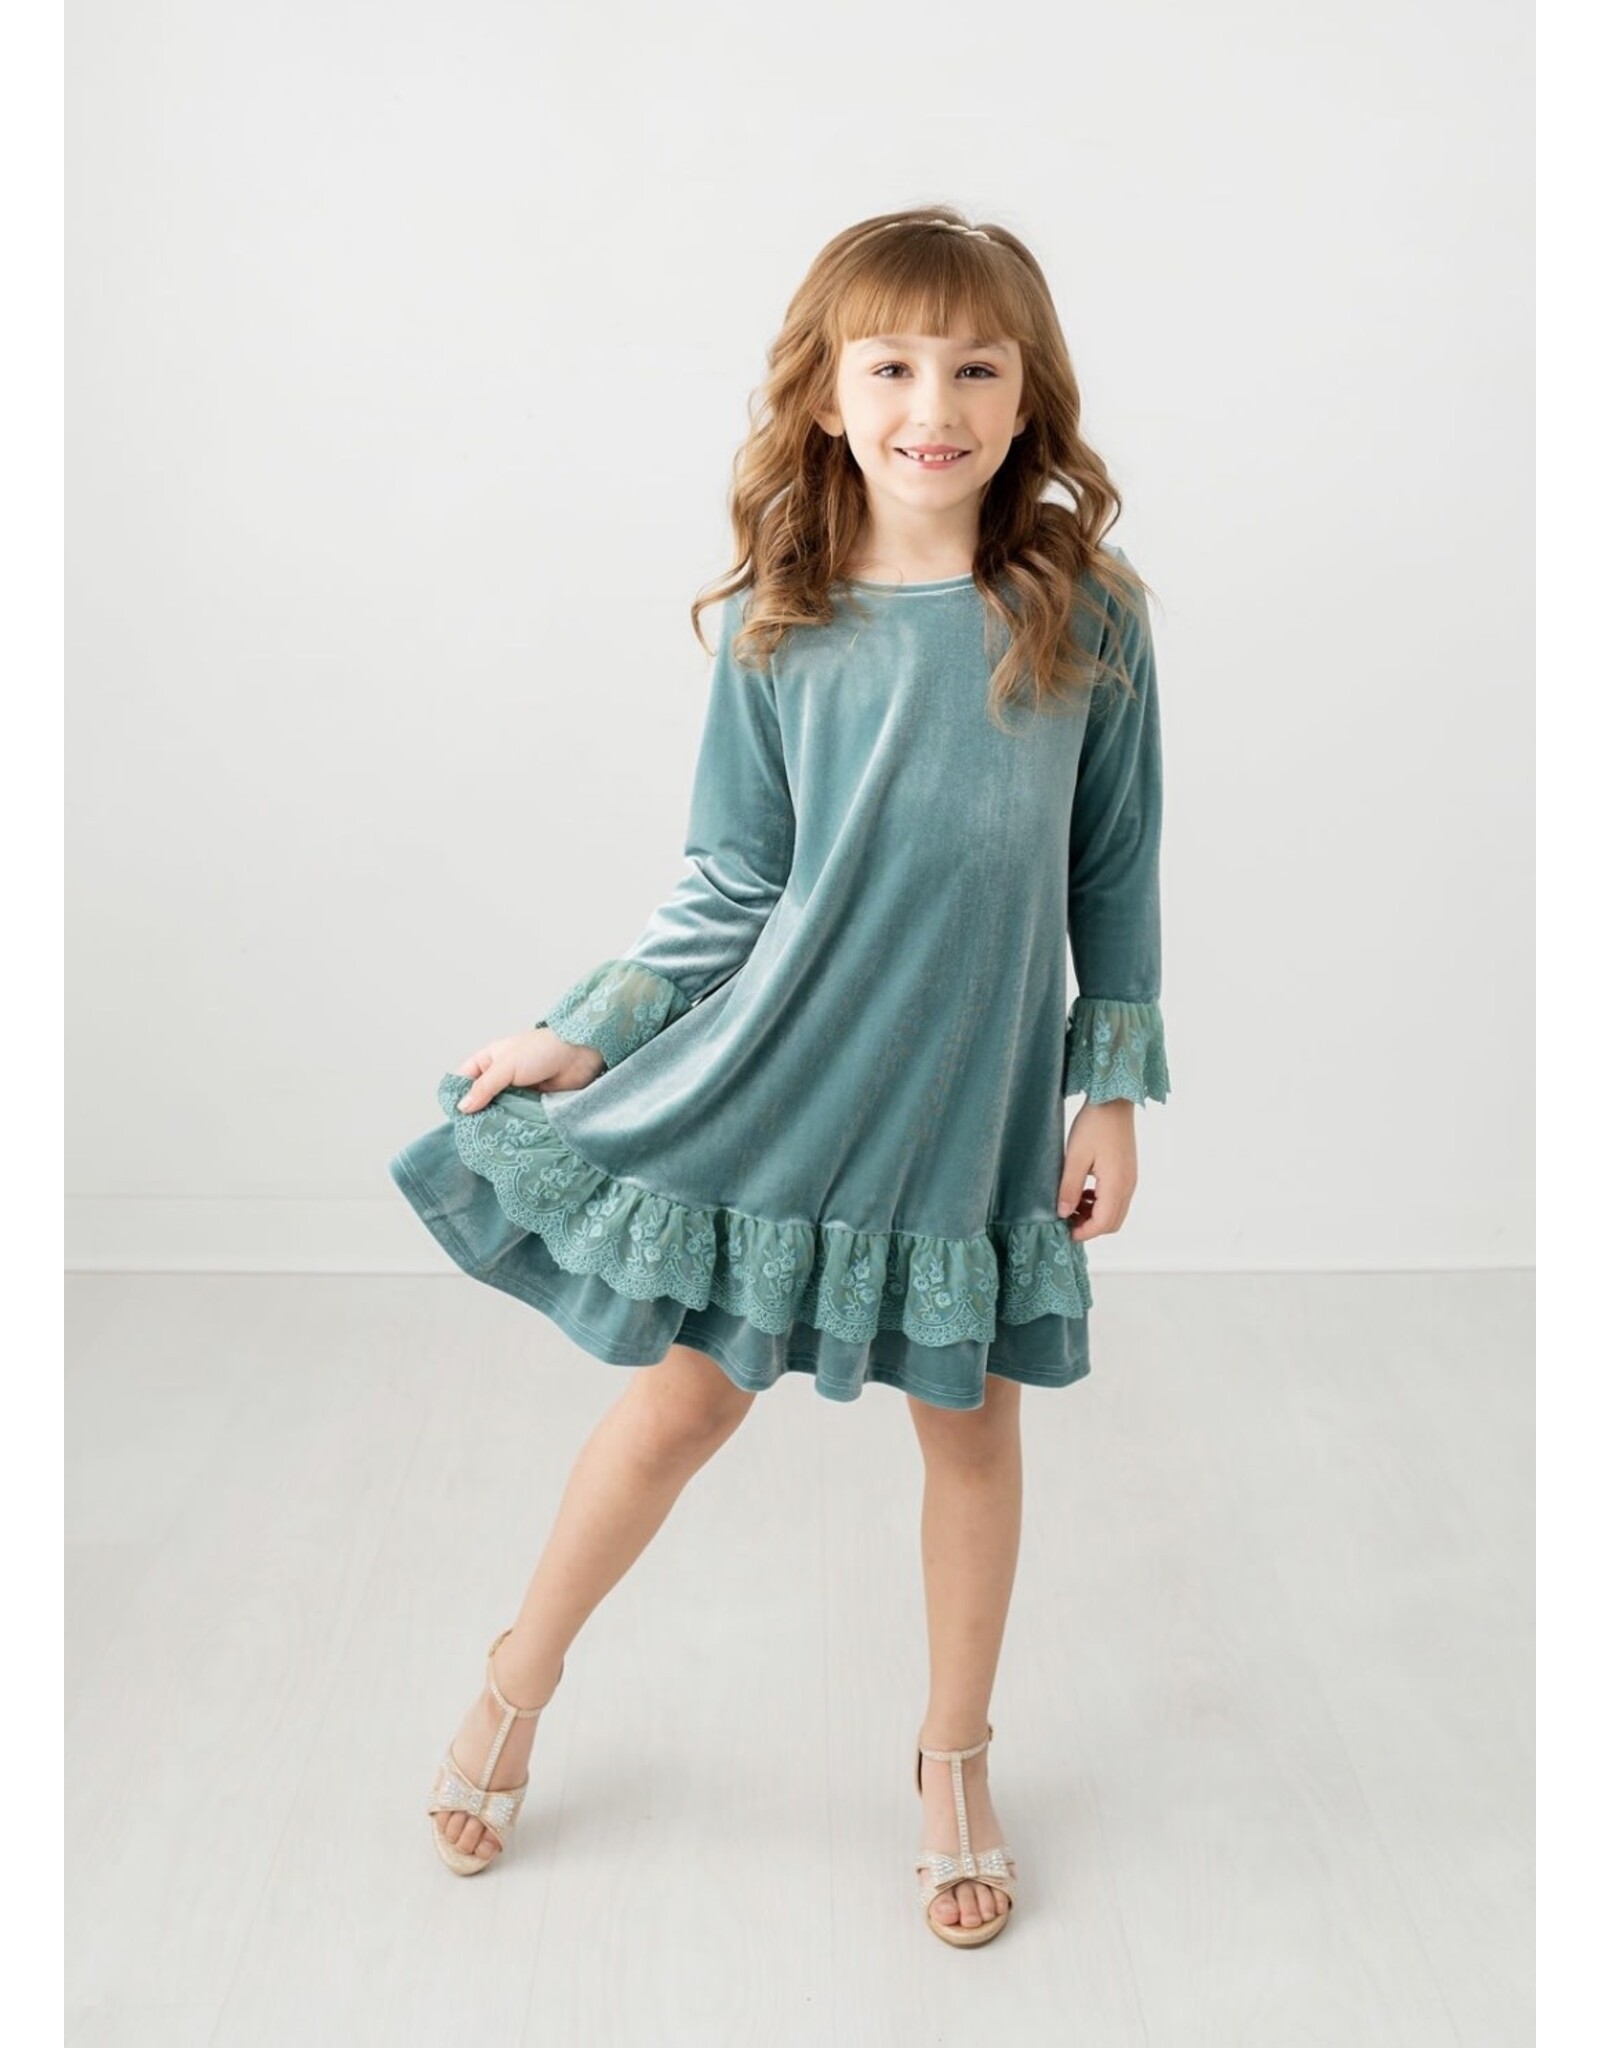 Evie's Closet Evie's Closet- Wintergreen Simplicity Dress